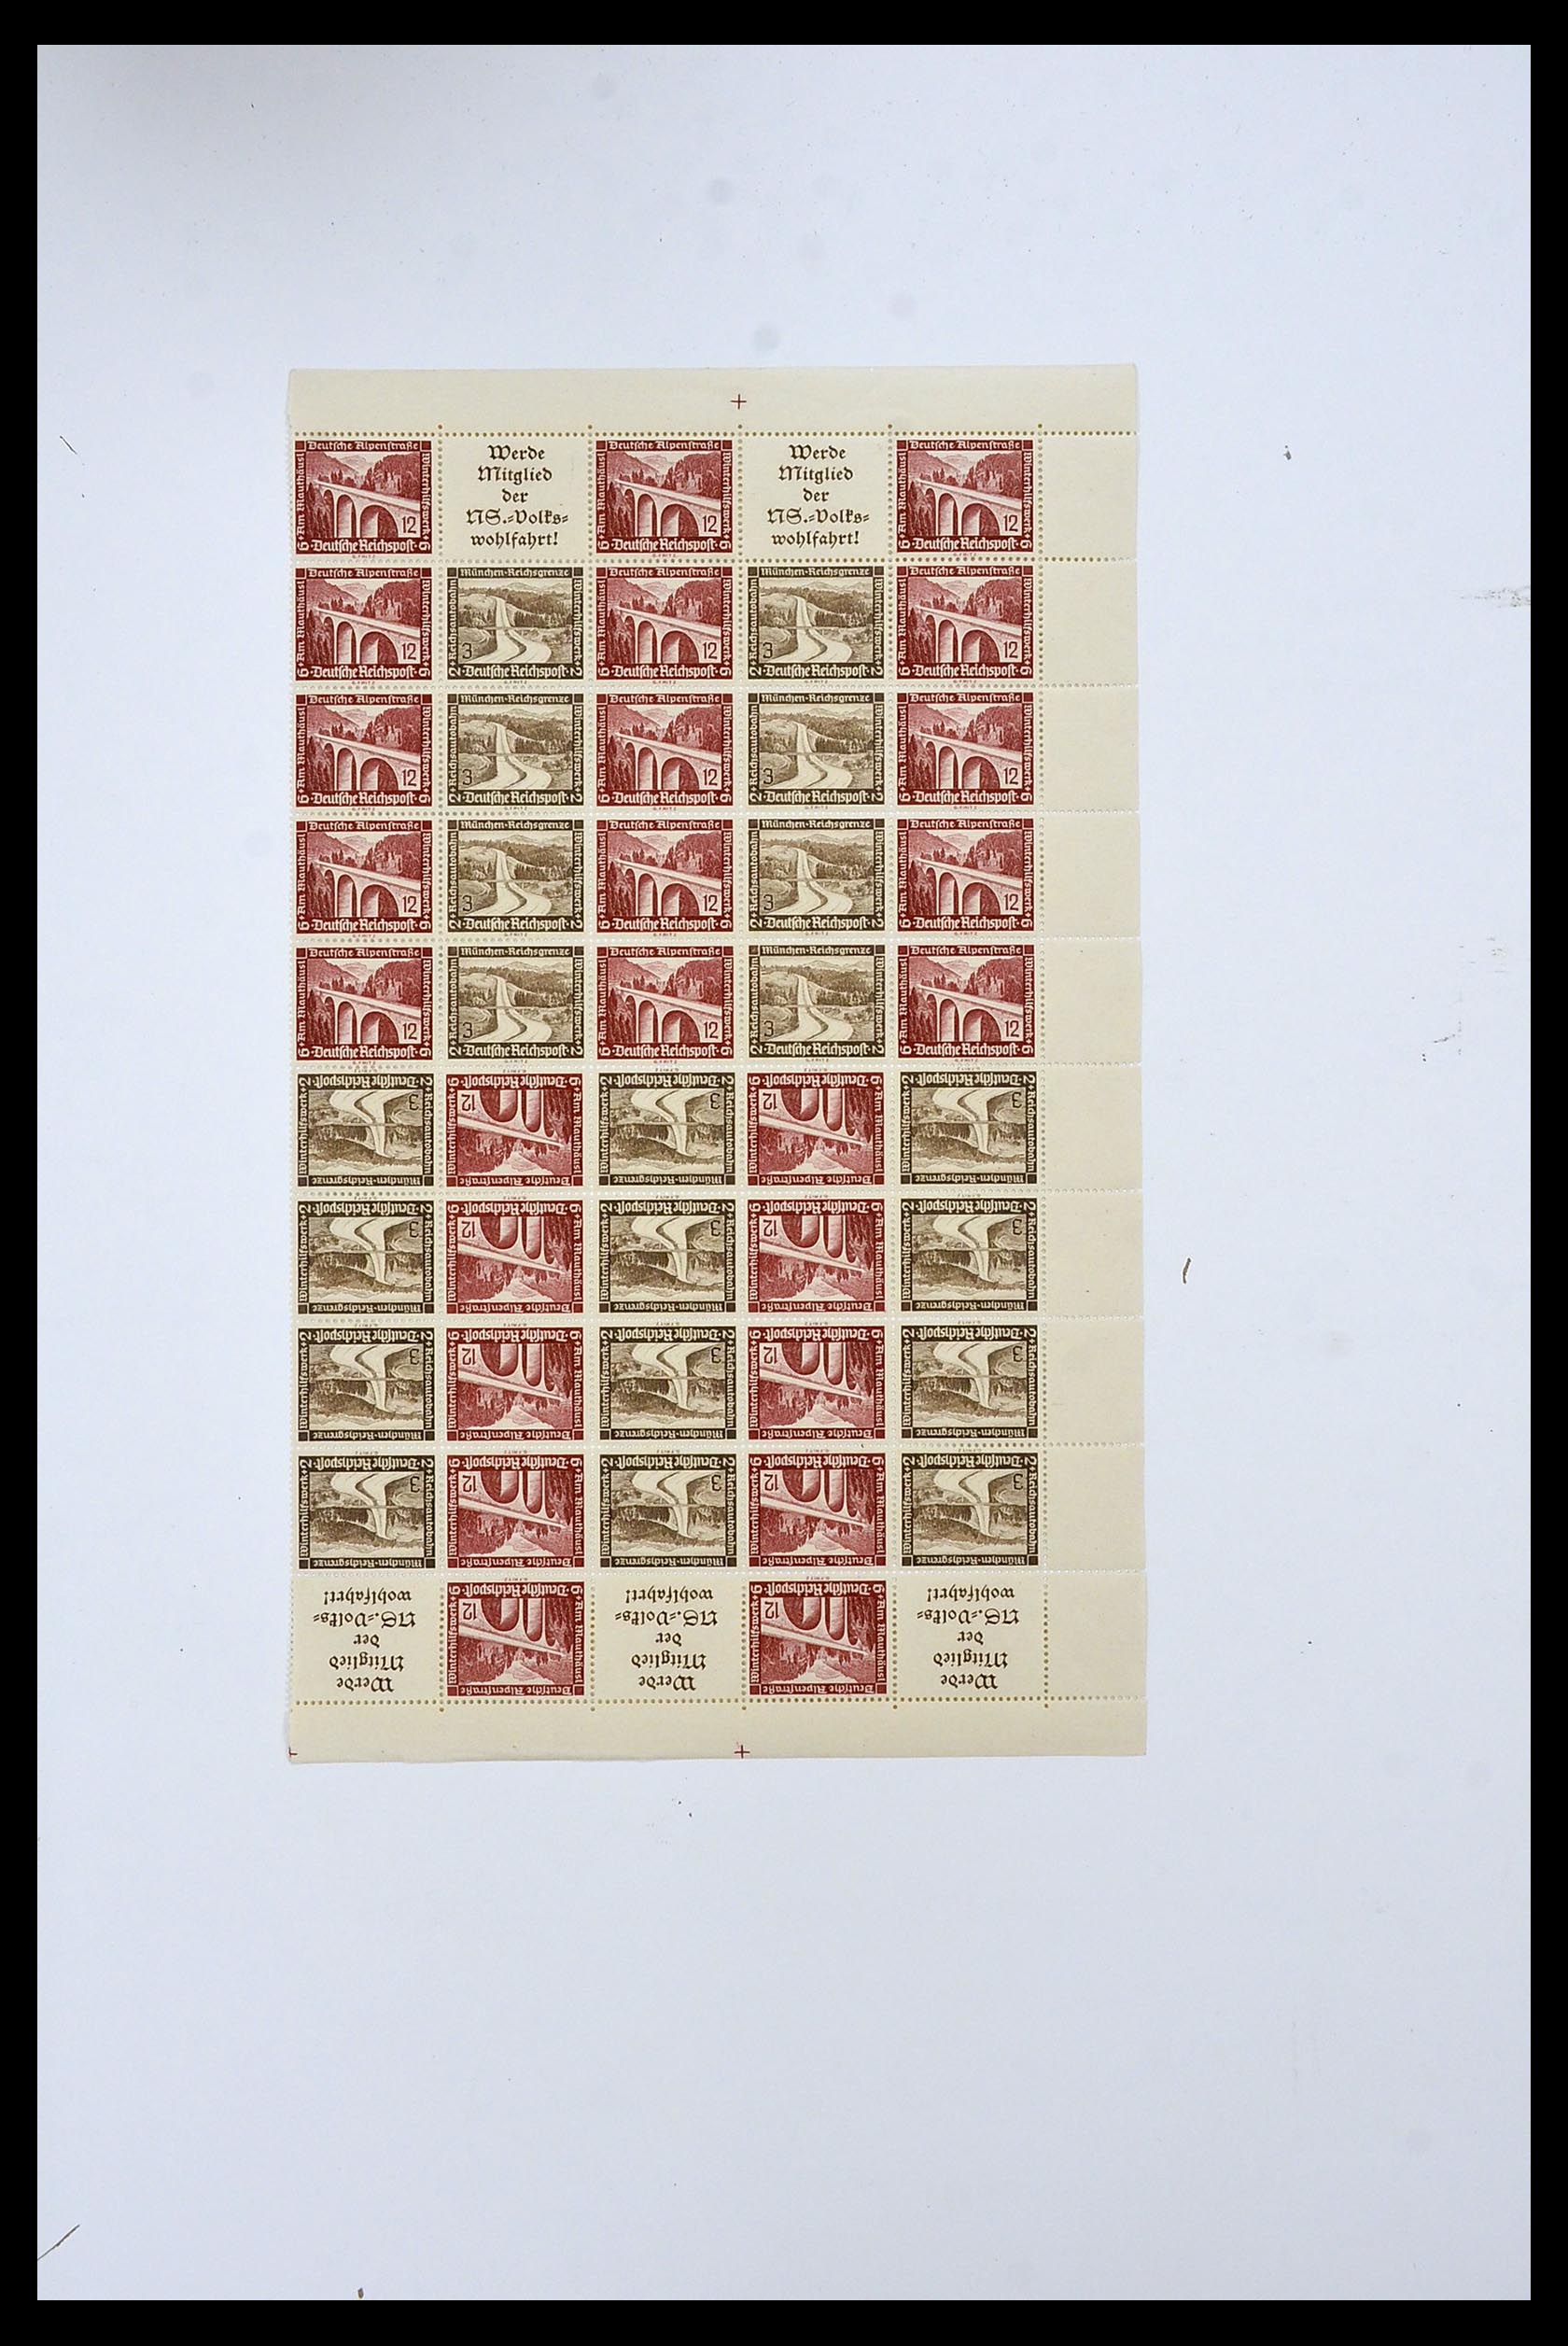 34164 063 - Stamp collection 34164 German Reich Markenheftchenbogen 1933-1942.